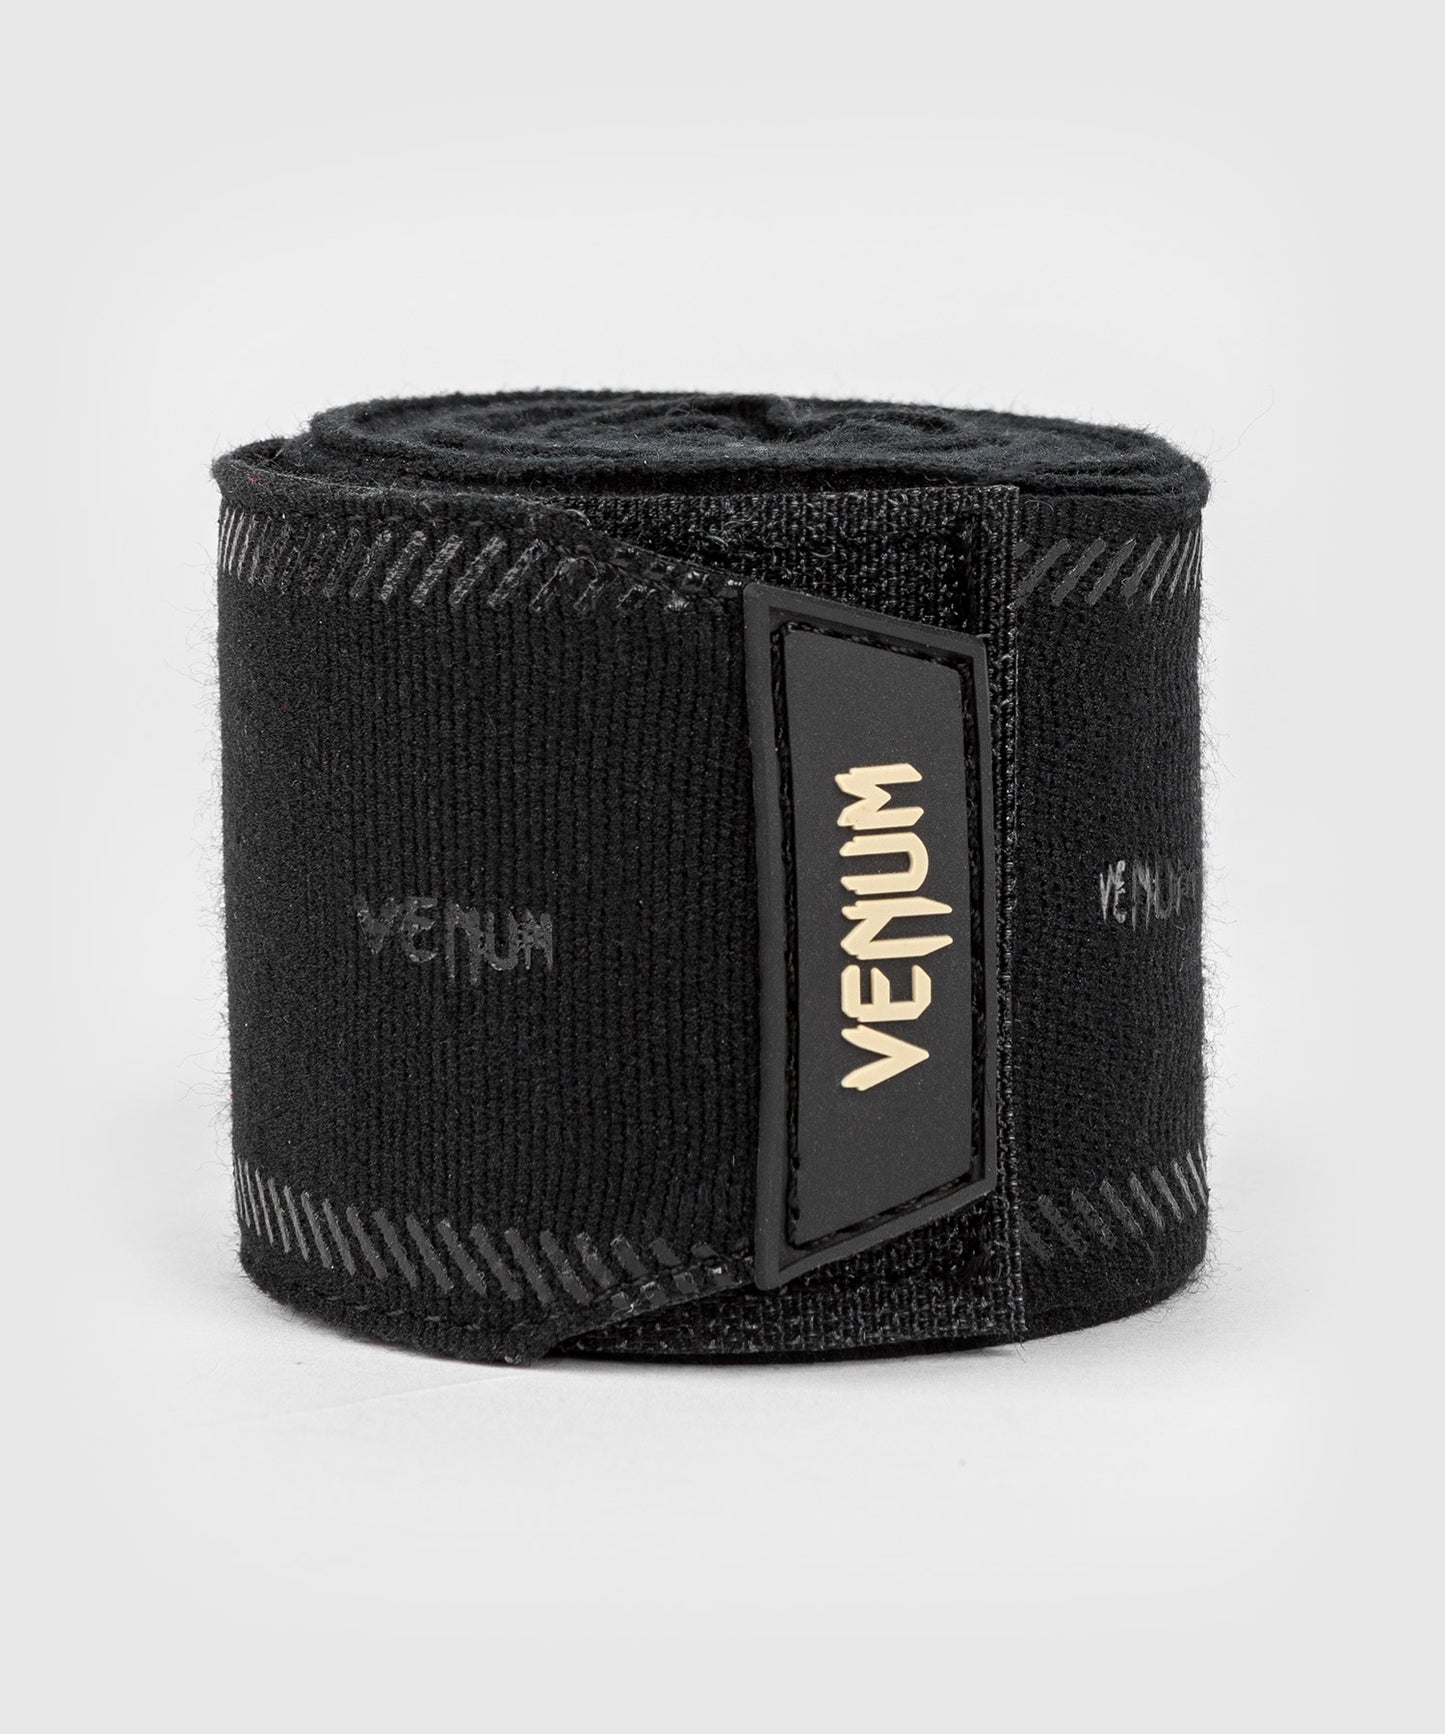 Venum Impact Evo Hand Wraps - Black - 180 in